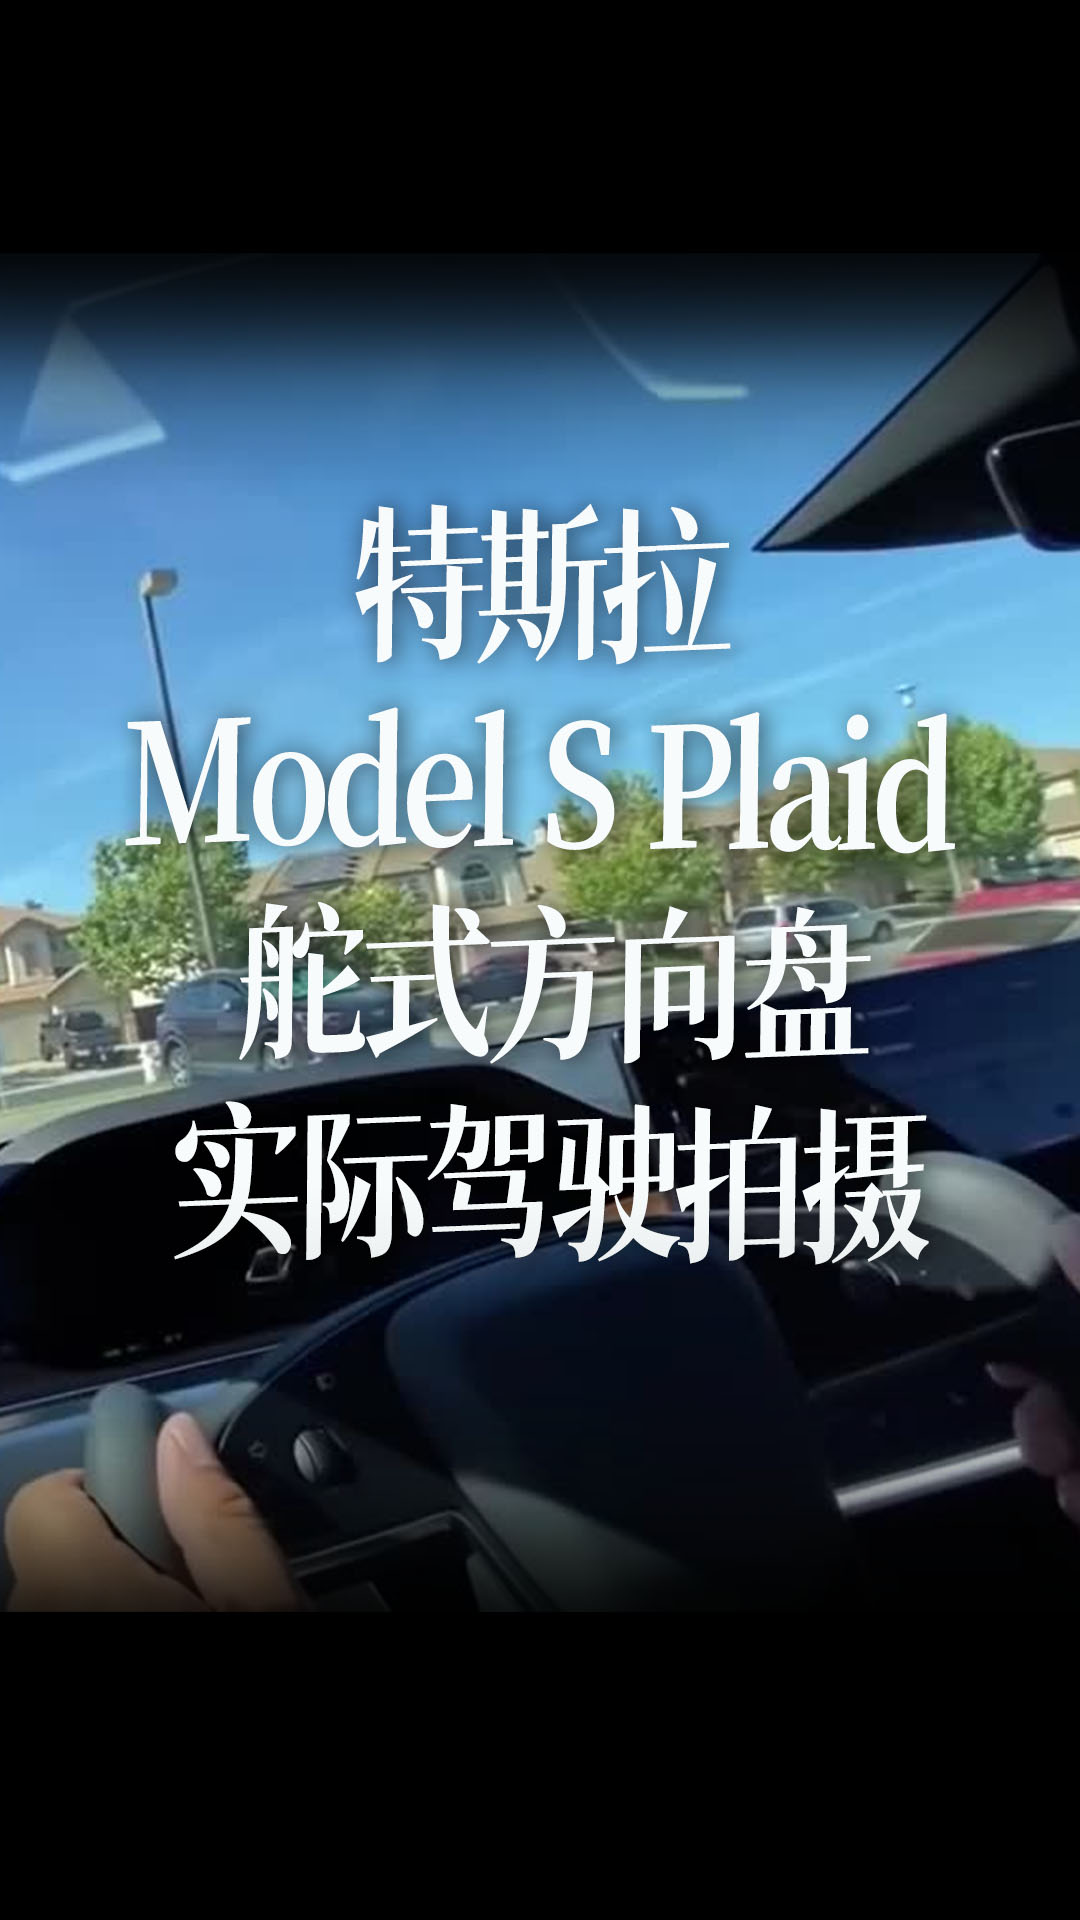 特斯拉 Model S Plaid 舵式方向盘实际驾驶拍摄